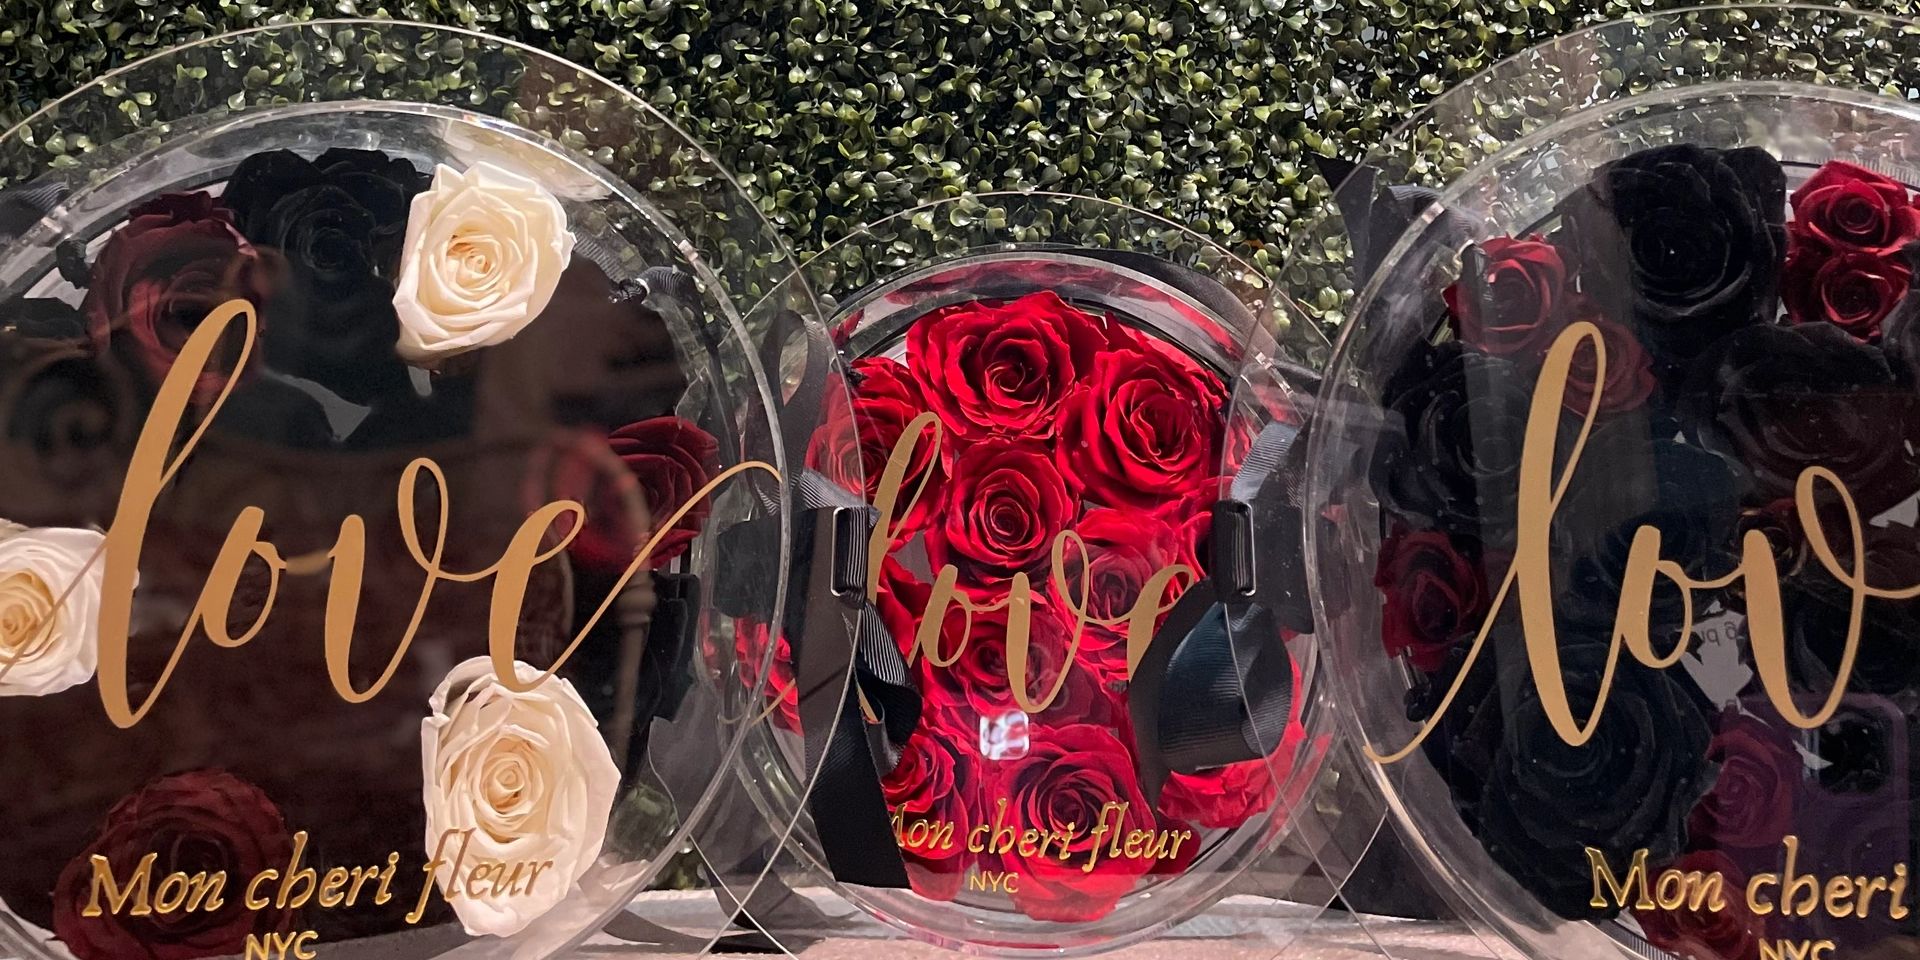 Acrylic rose boxes